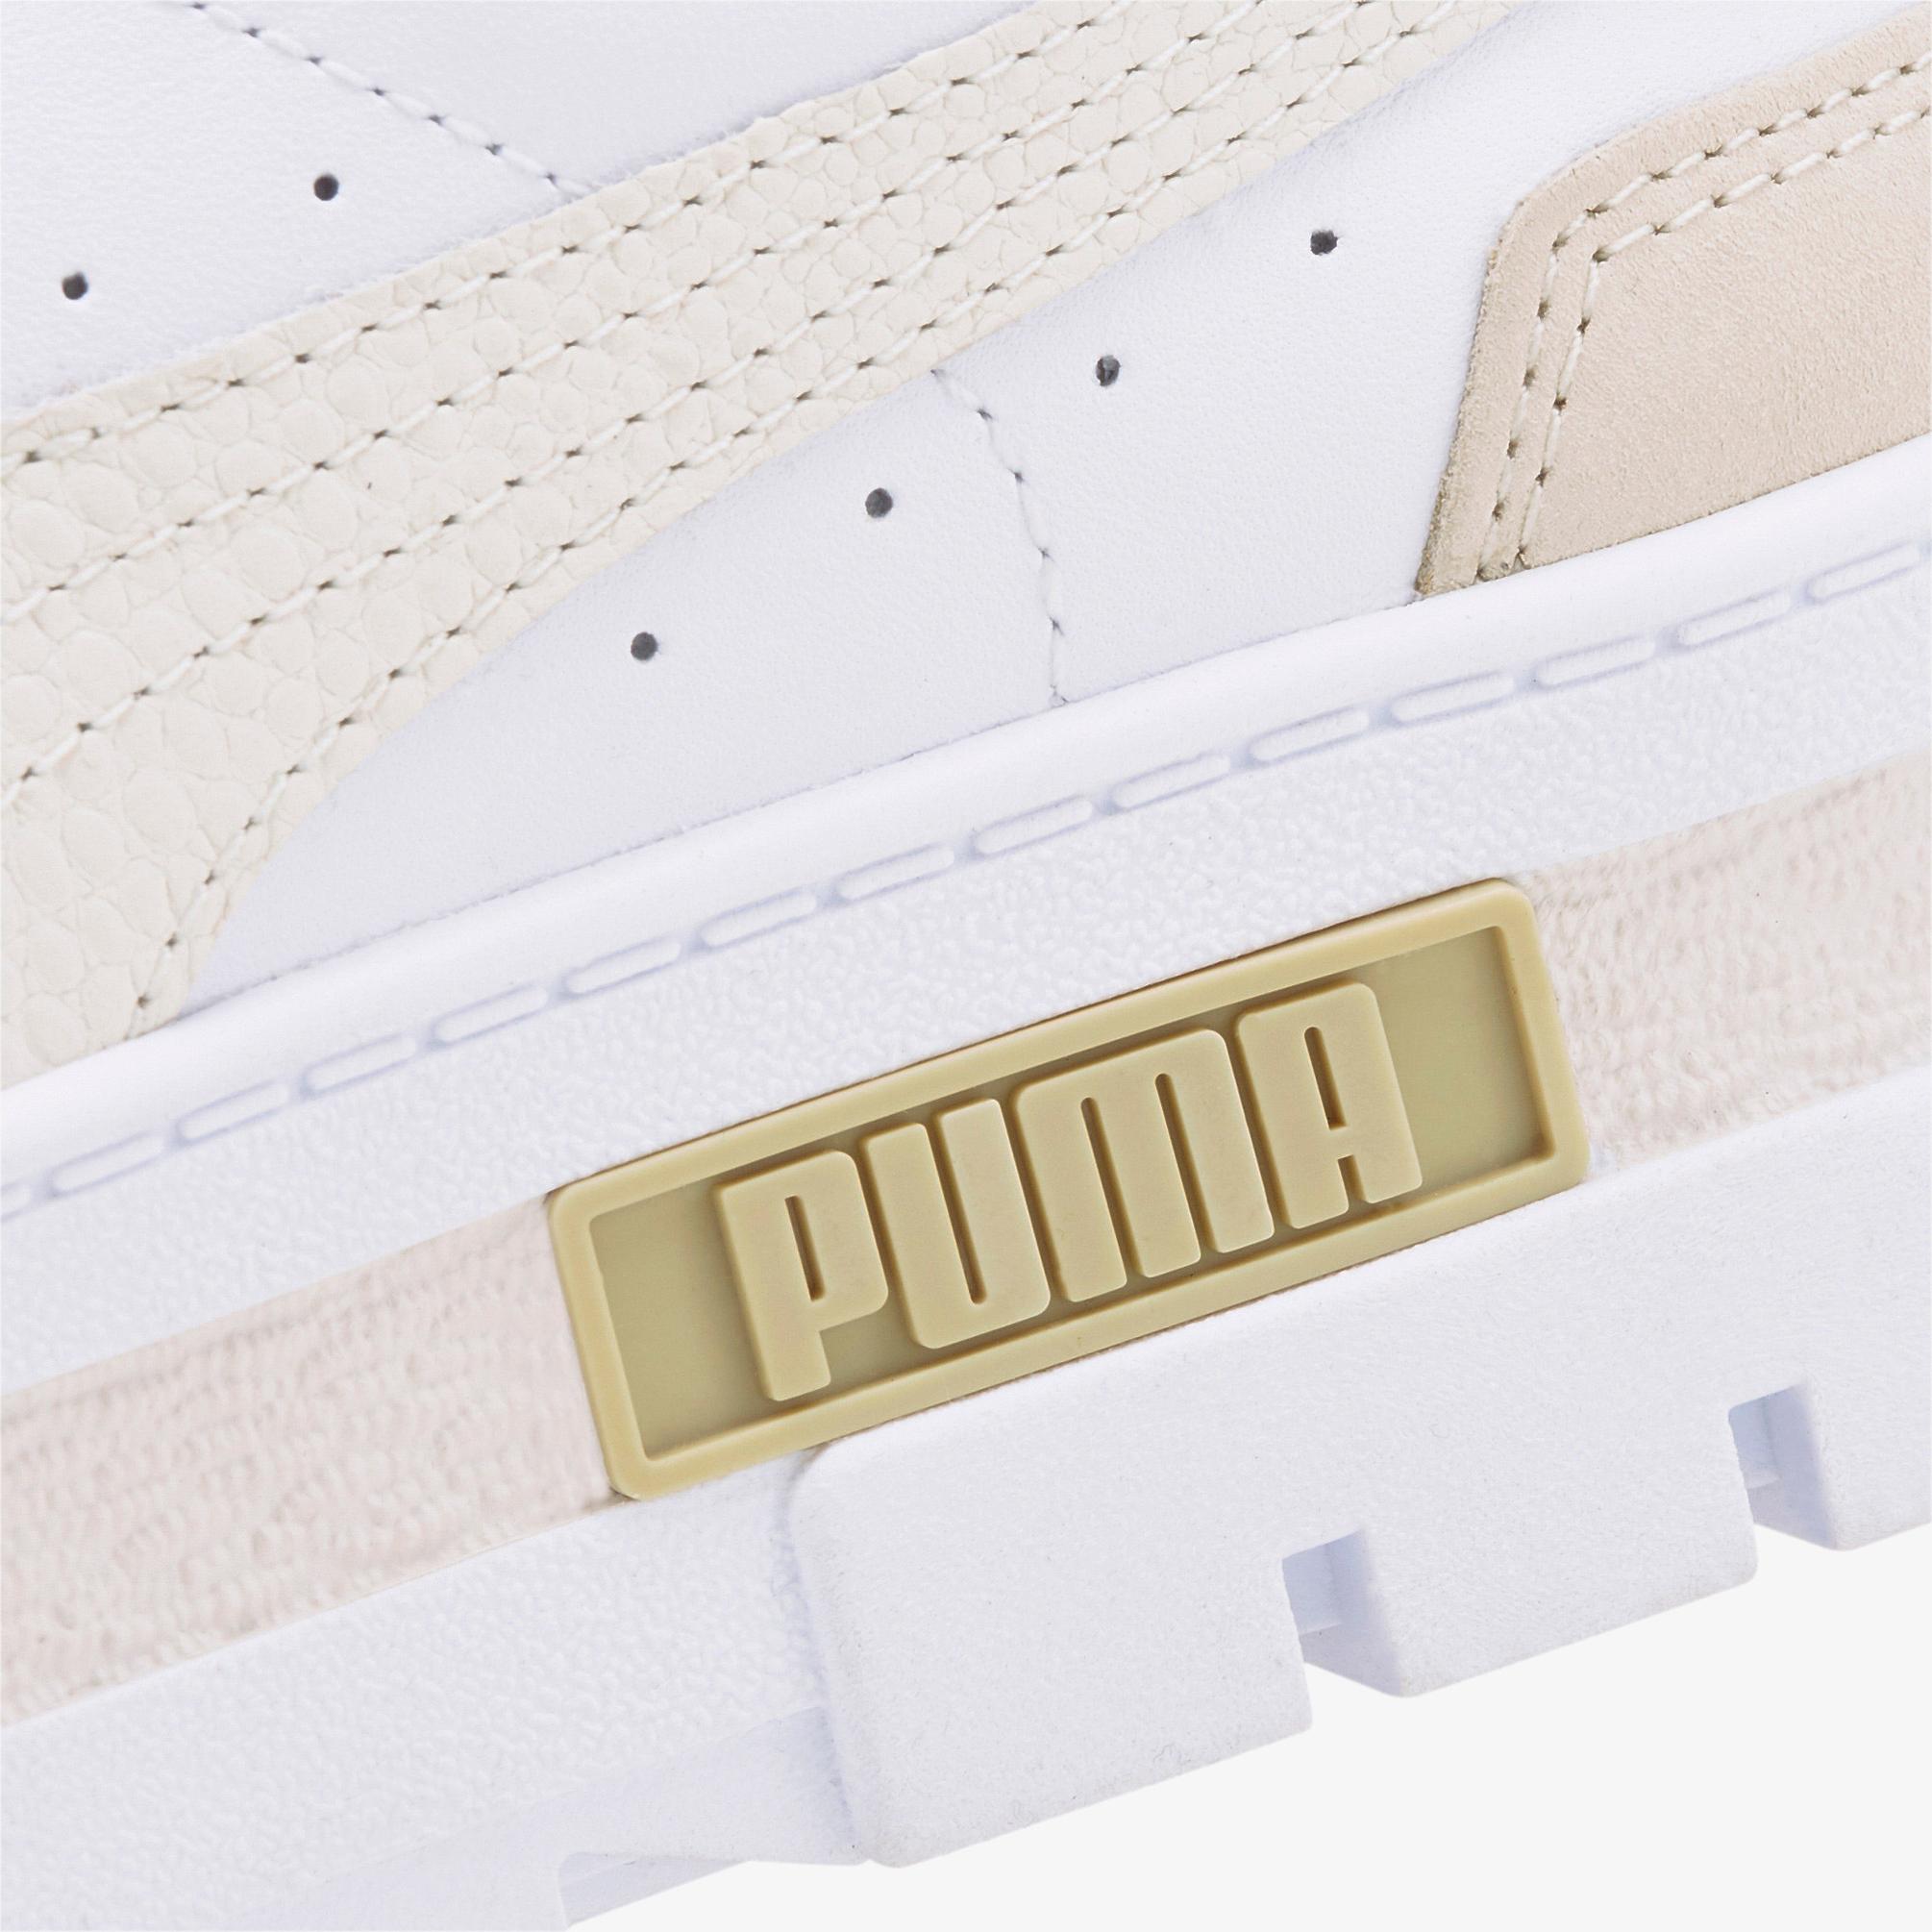  Puma Mayze Luxe Kadın Platform Beyaz Spor Ayakkabı